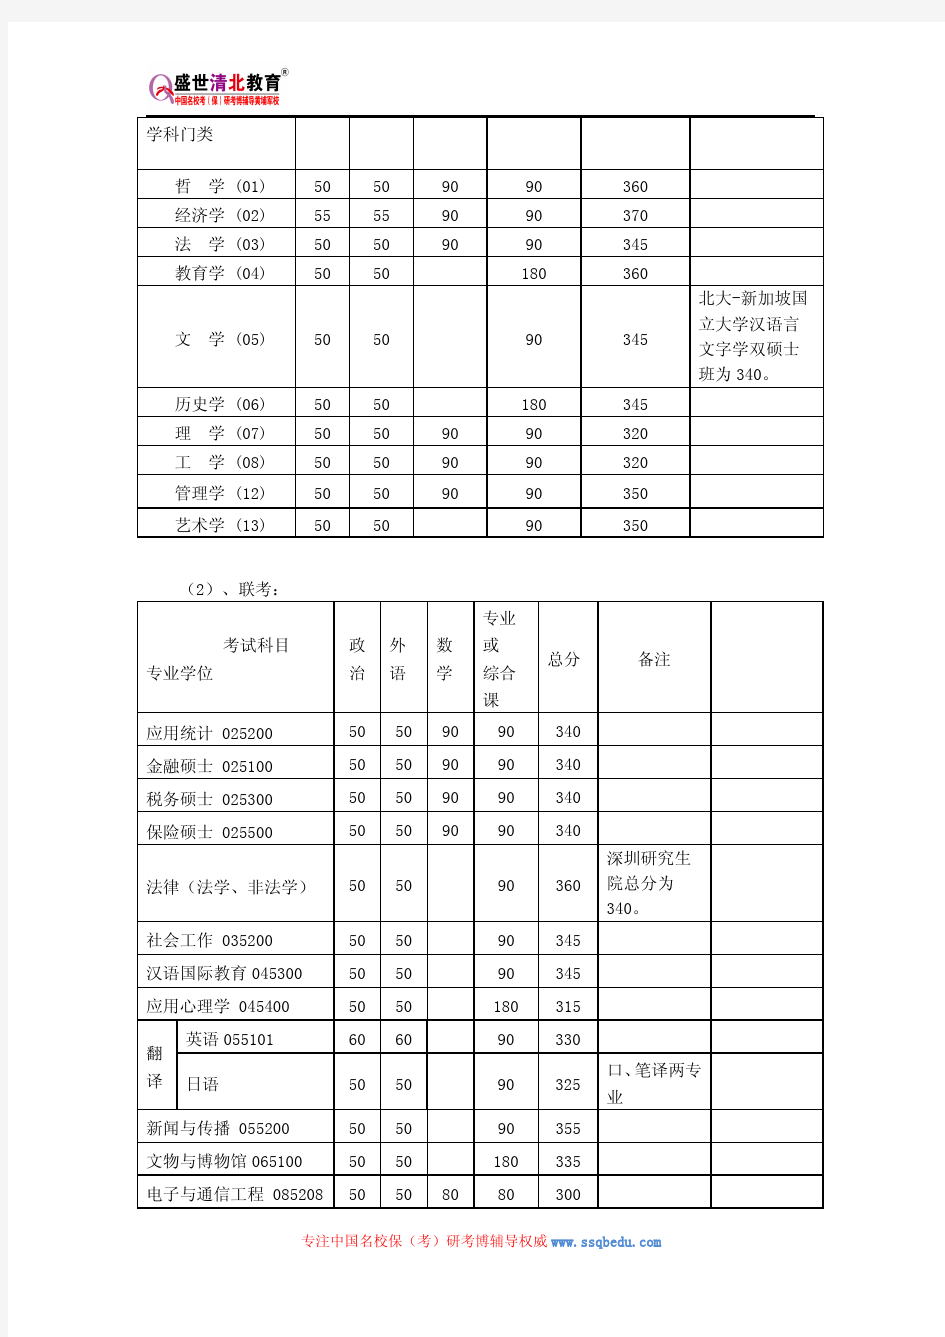 北京大学943专业综合2(城市规划基础) (包括城市规划原理、城市地理)考研参考书、历年真题、复试分数线